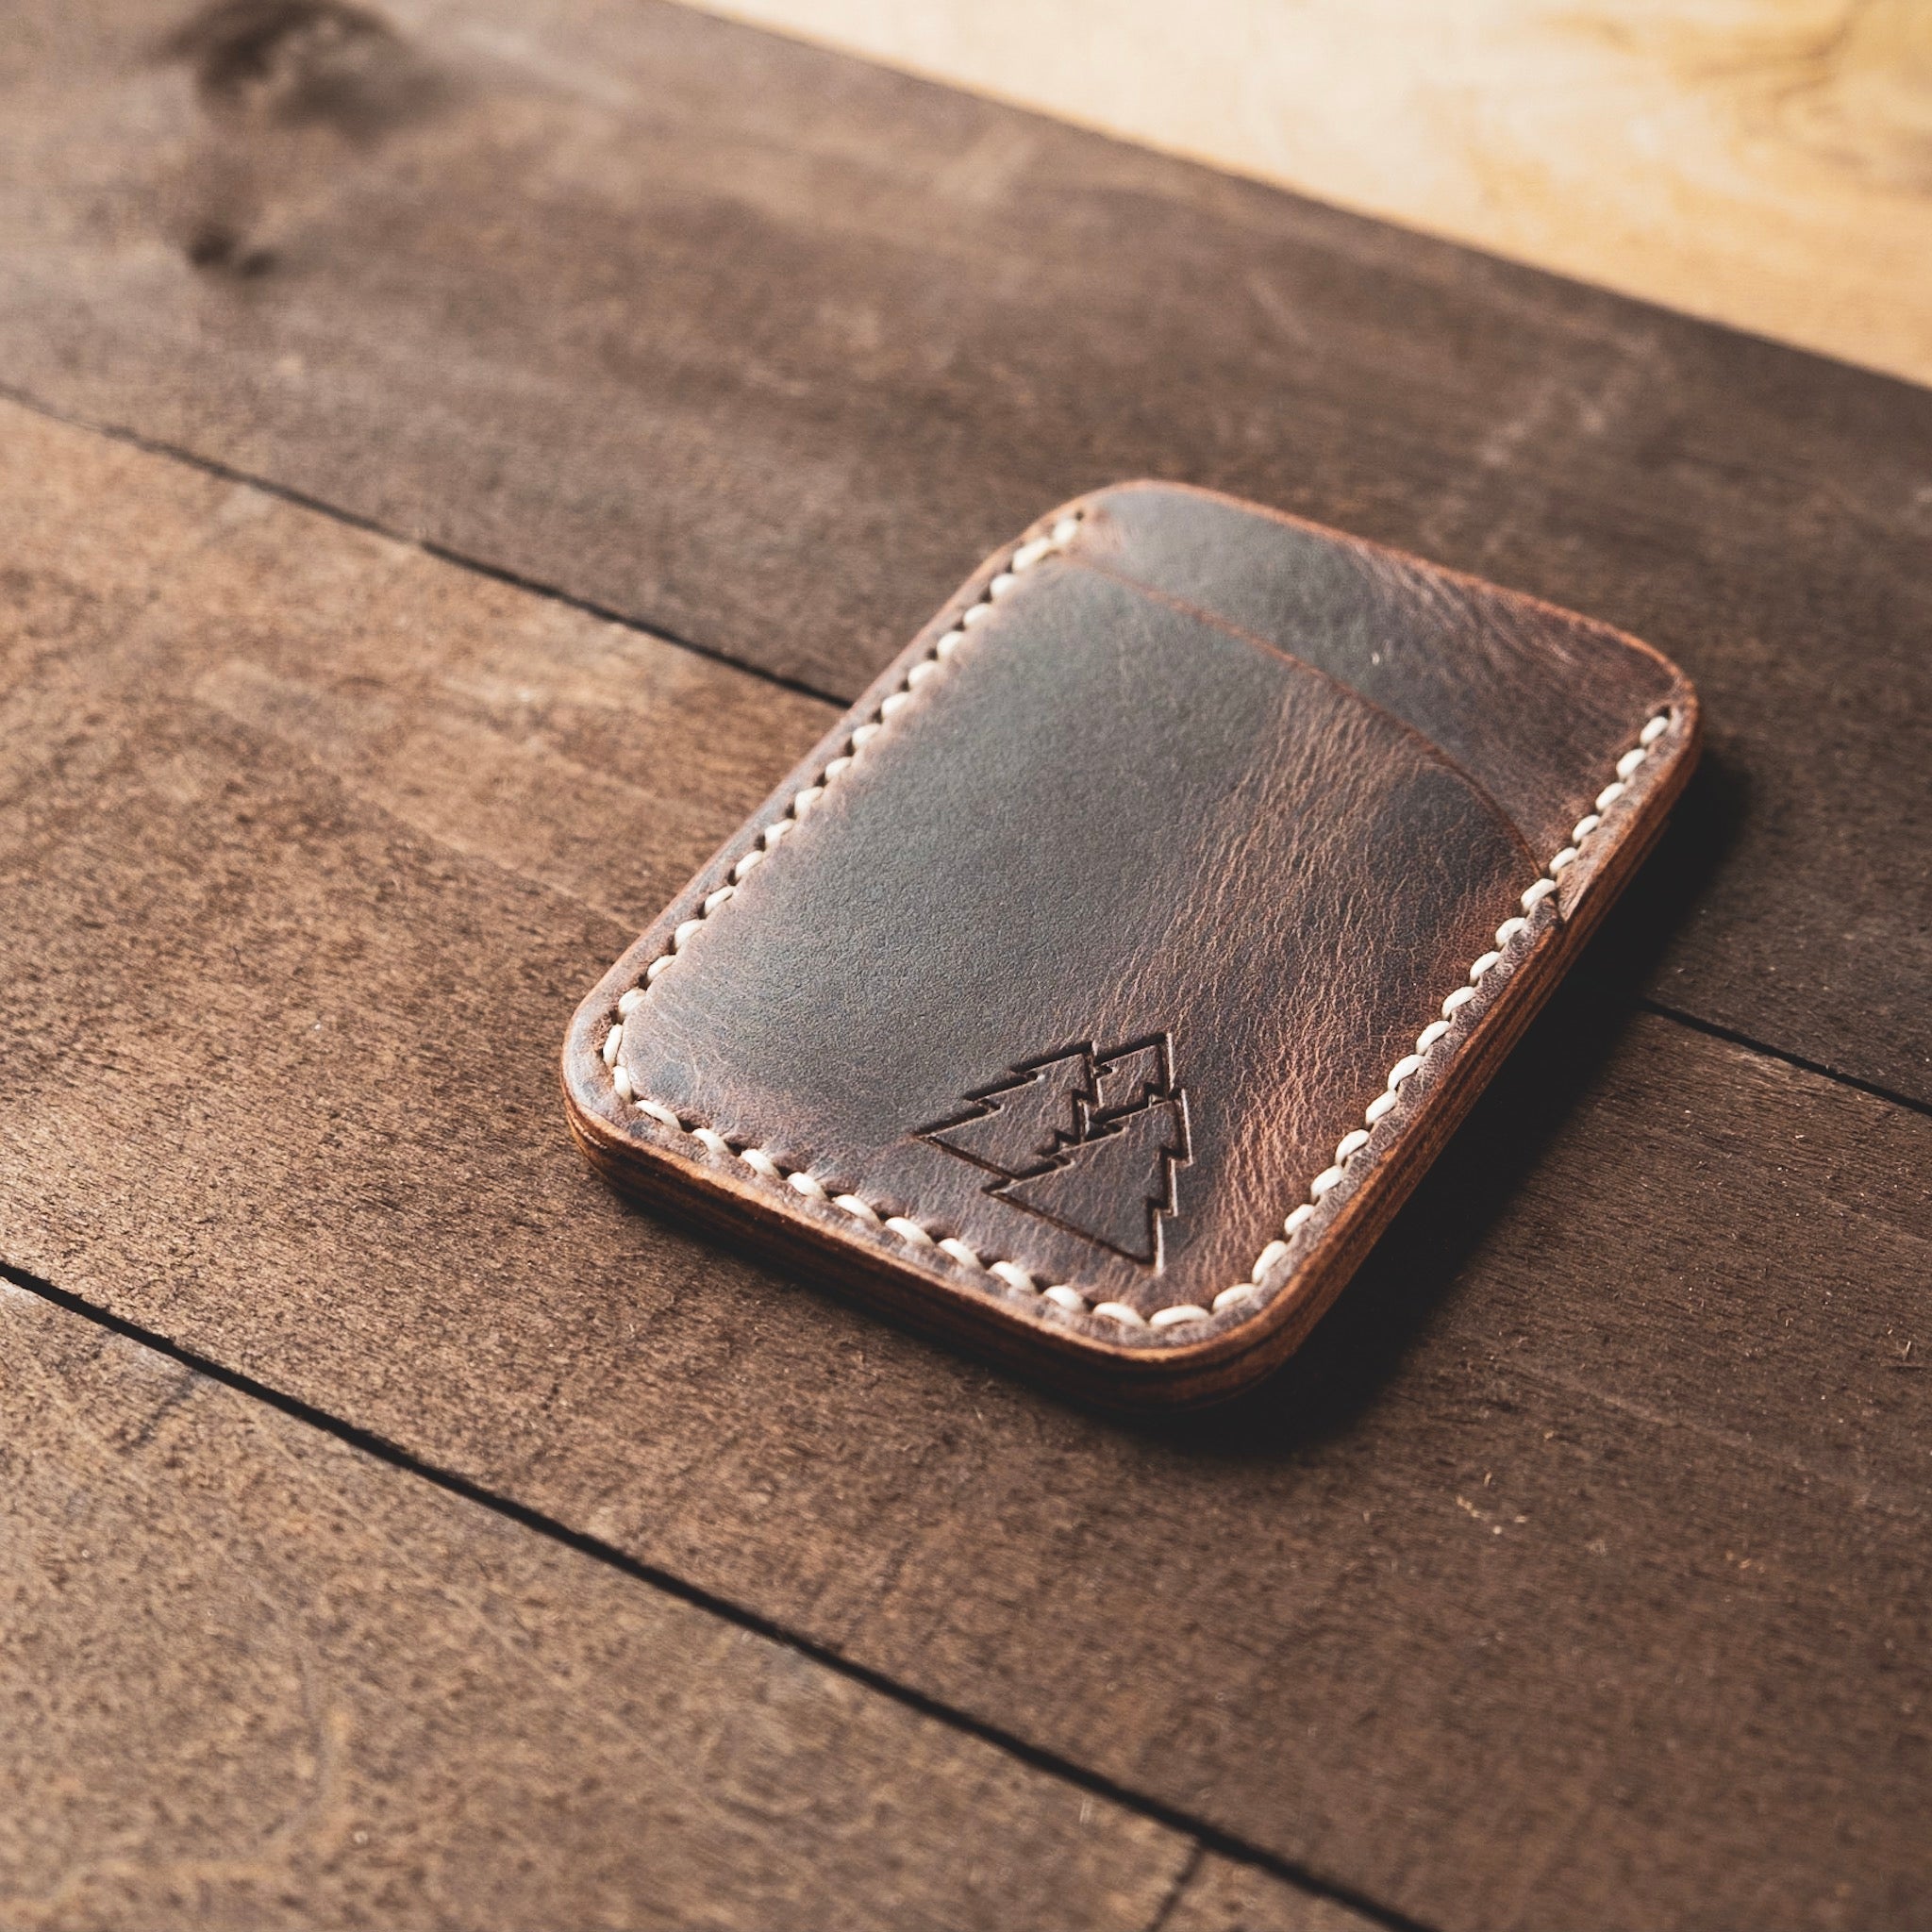 Card Wallet Plus - Rustic Brown